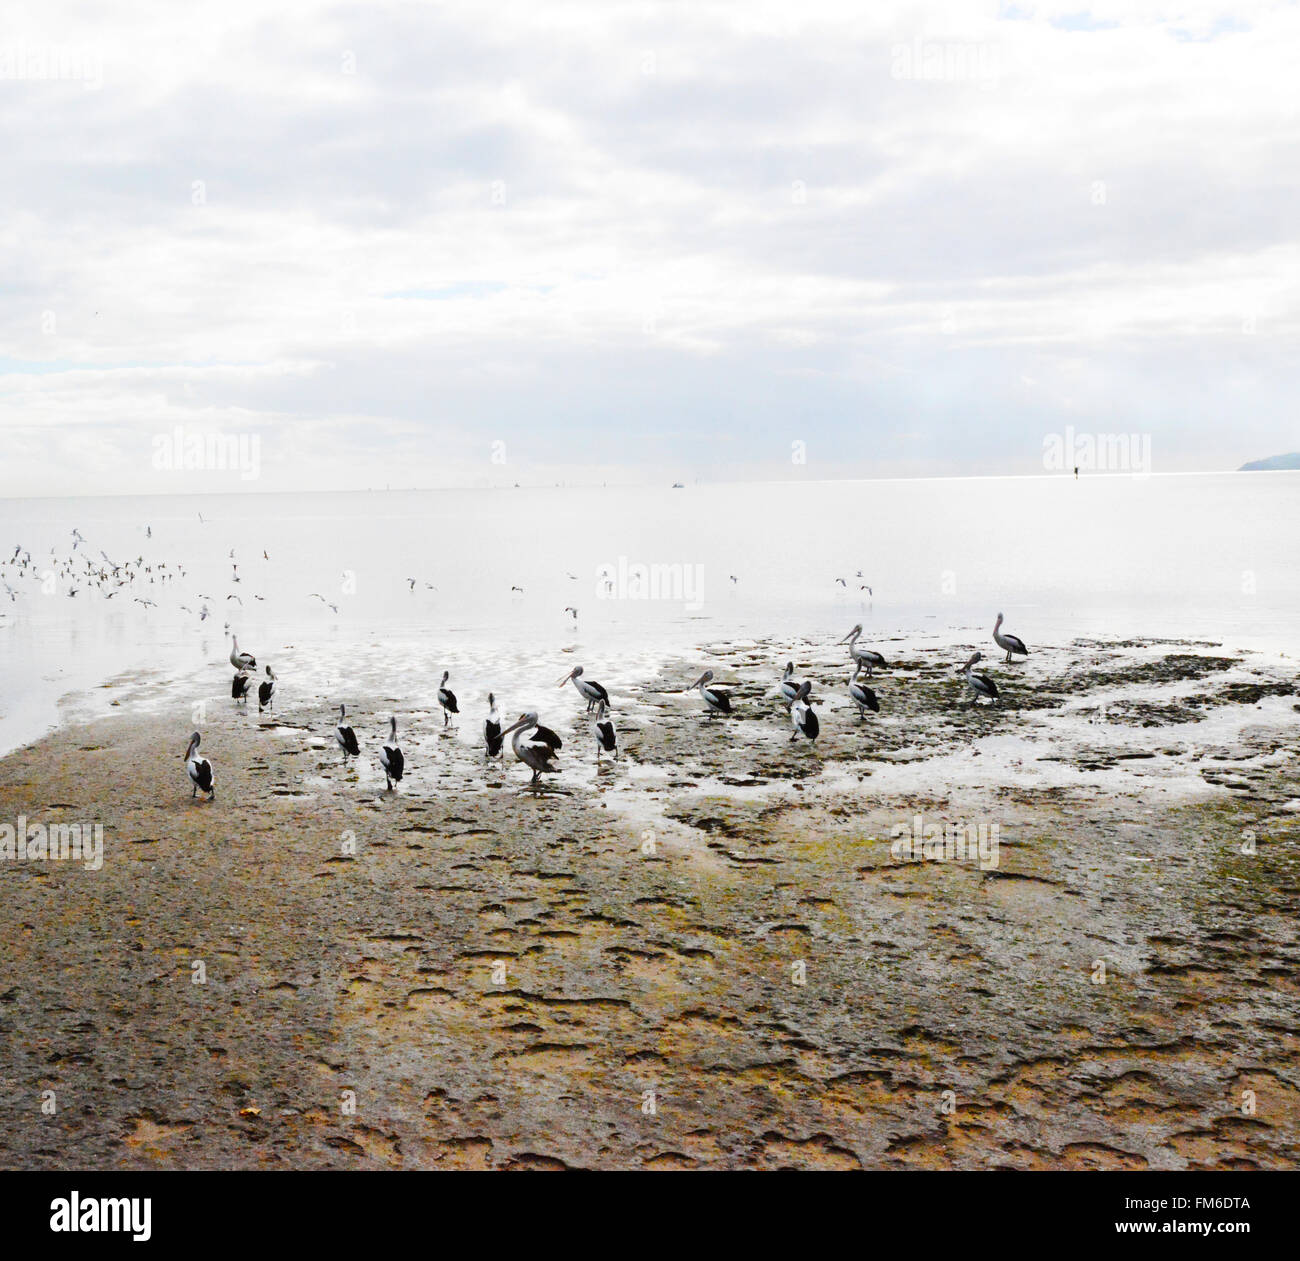 Pelicans on sand in Cairns, Queensland, Australia Stock Photo